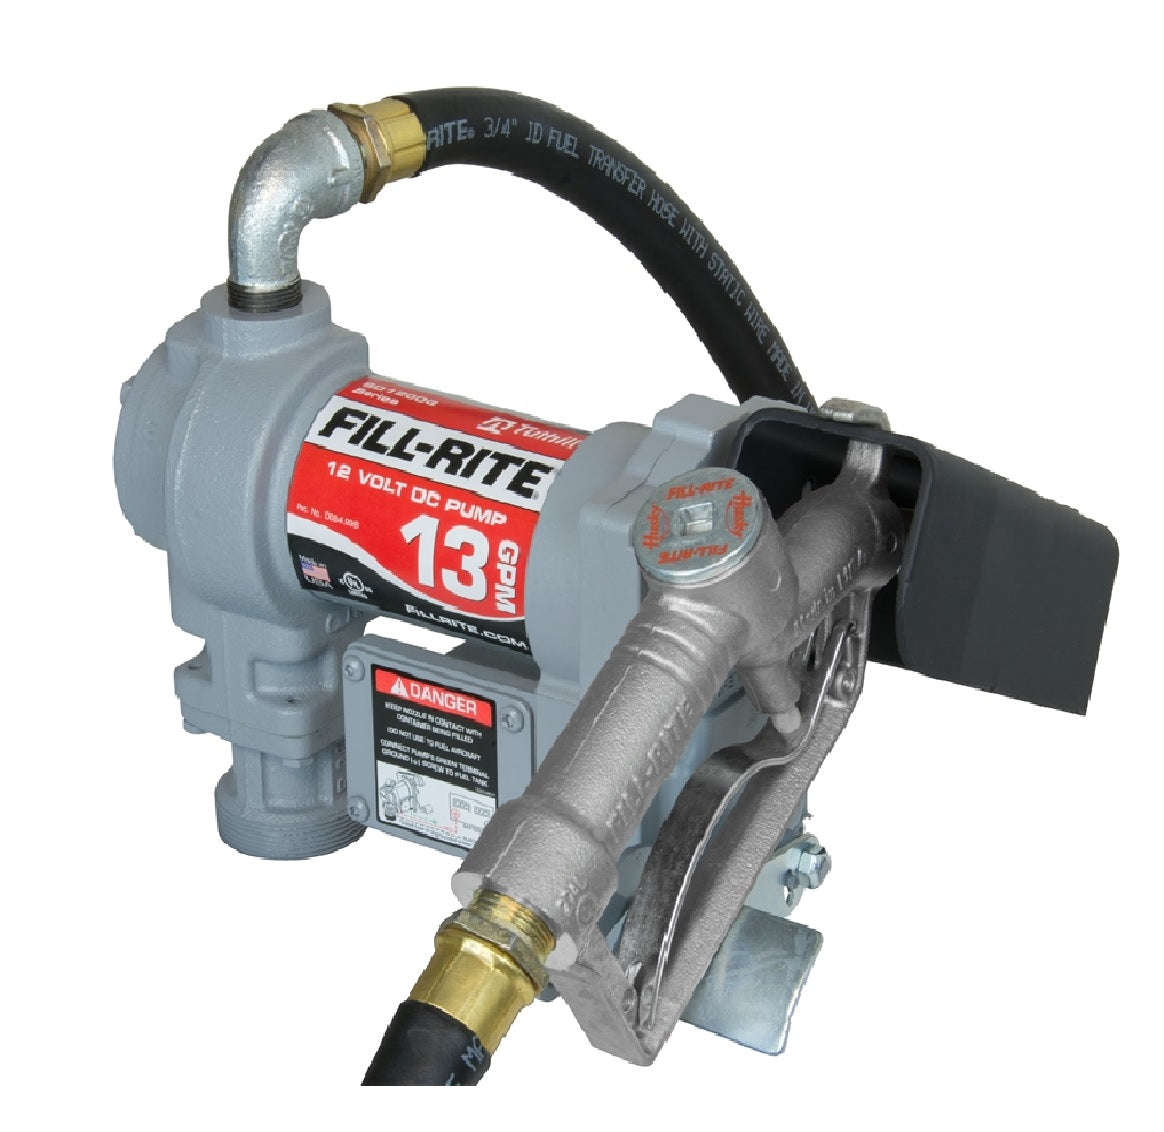 Fill-Rite SD1202H Fuel Transfer Pump, 13 gpm